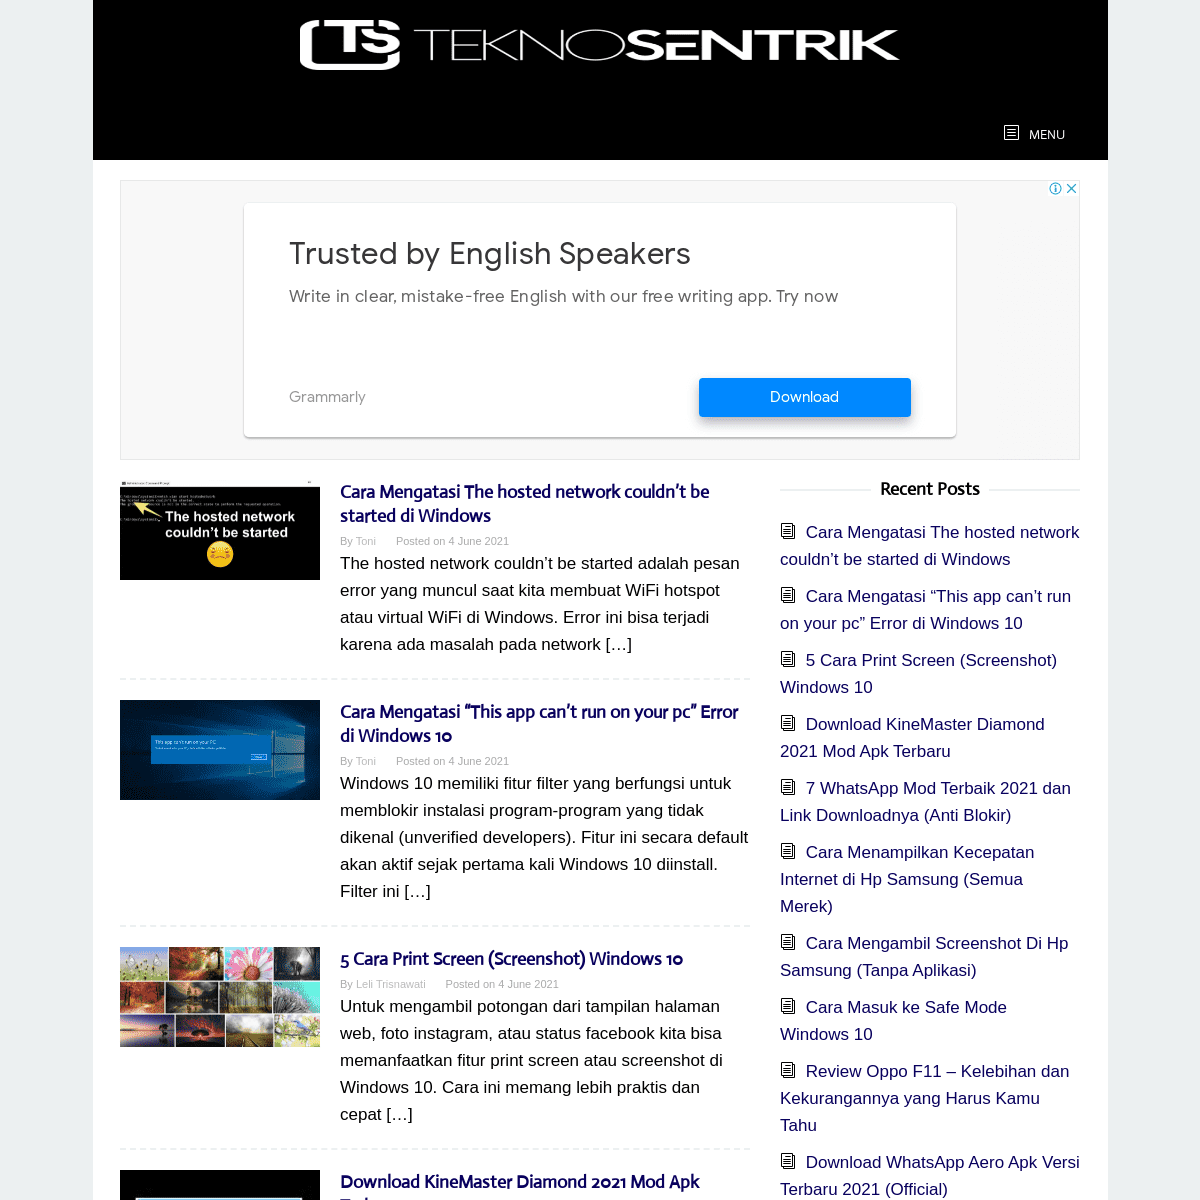 A complete backup of https://teknosentrik.com